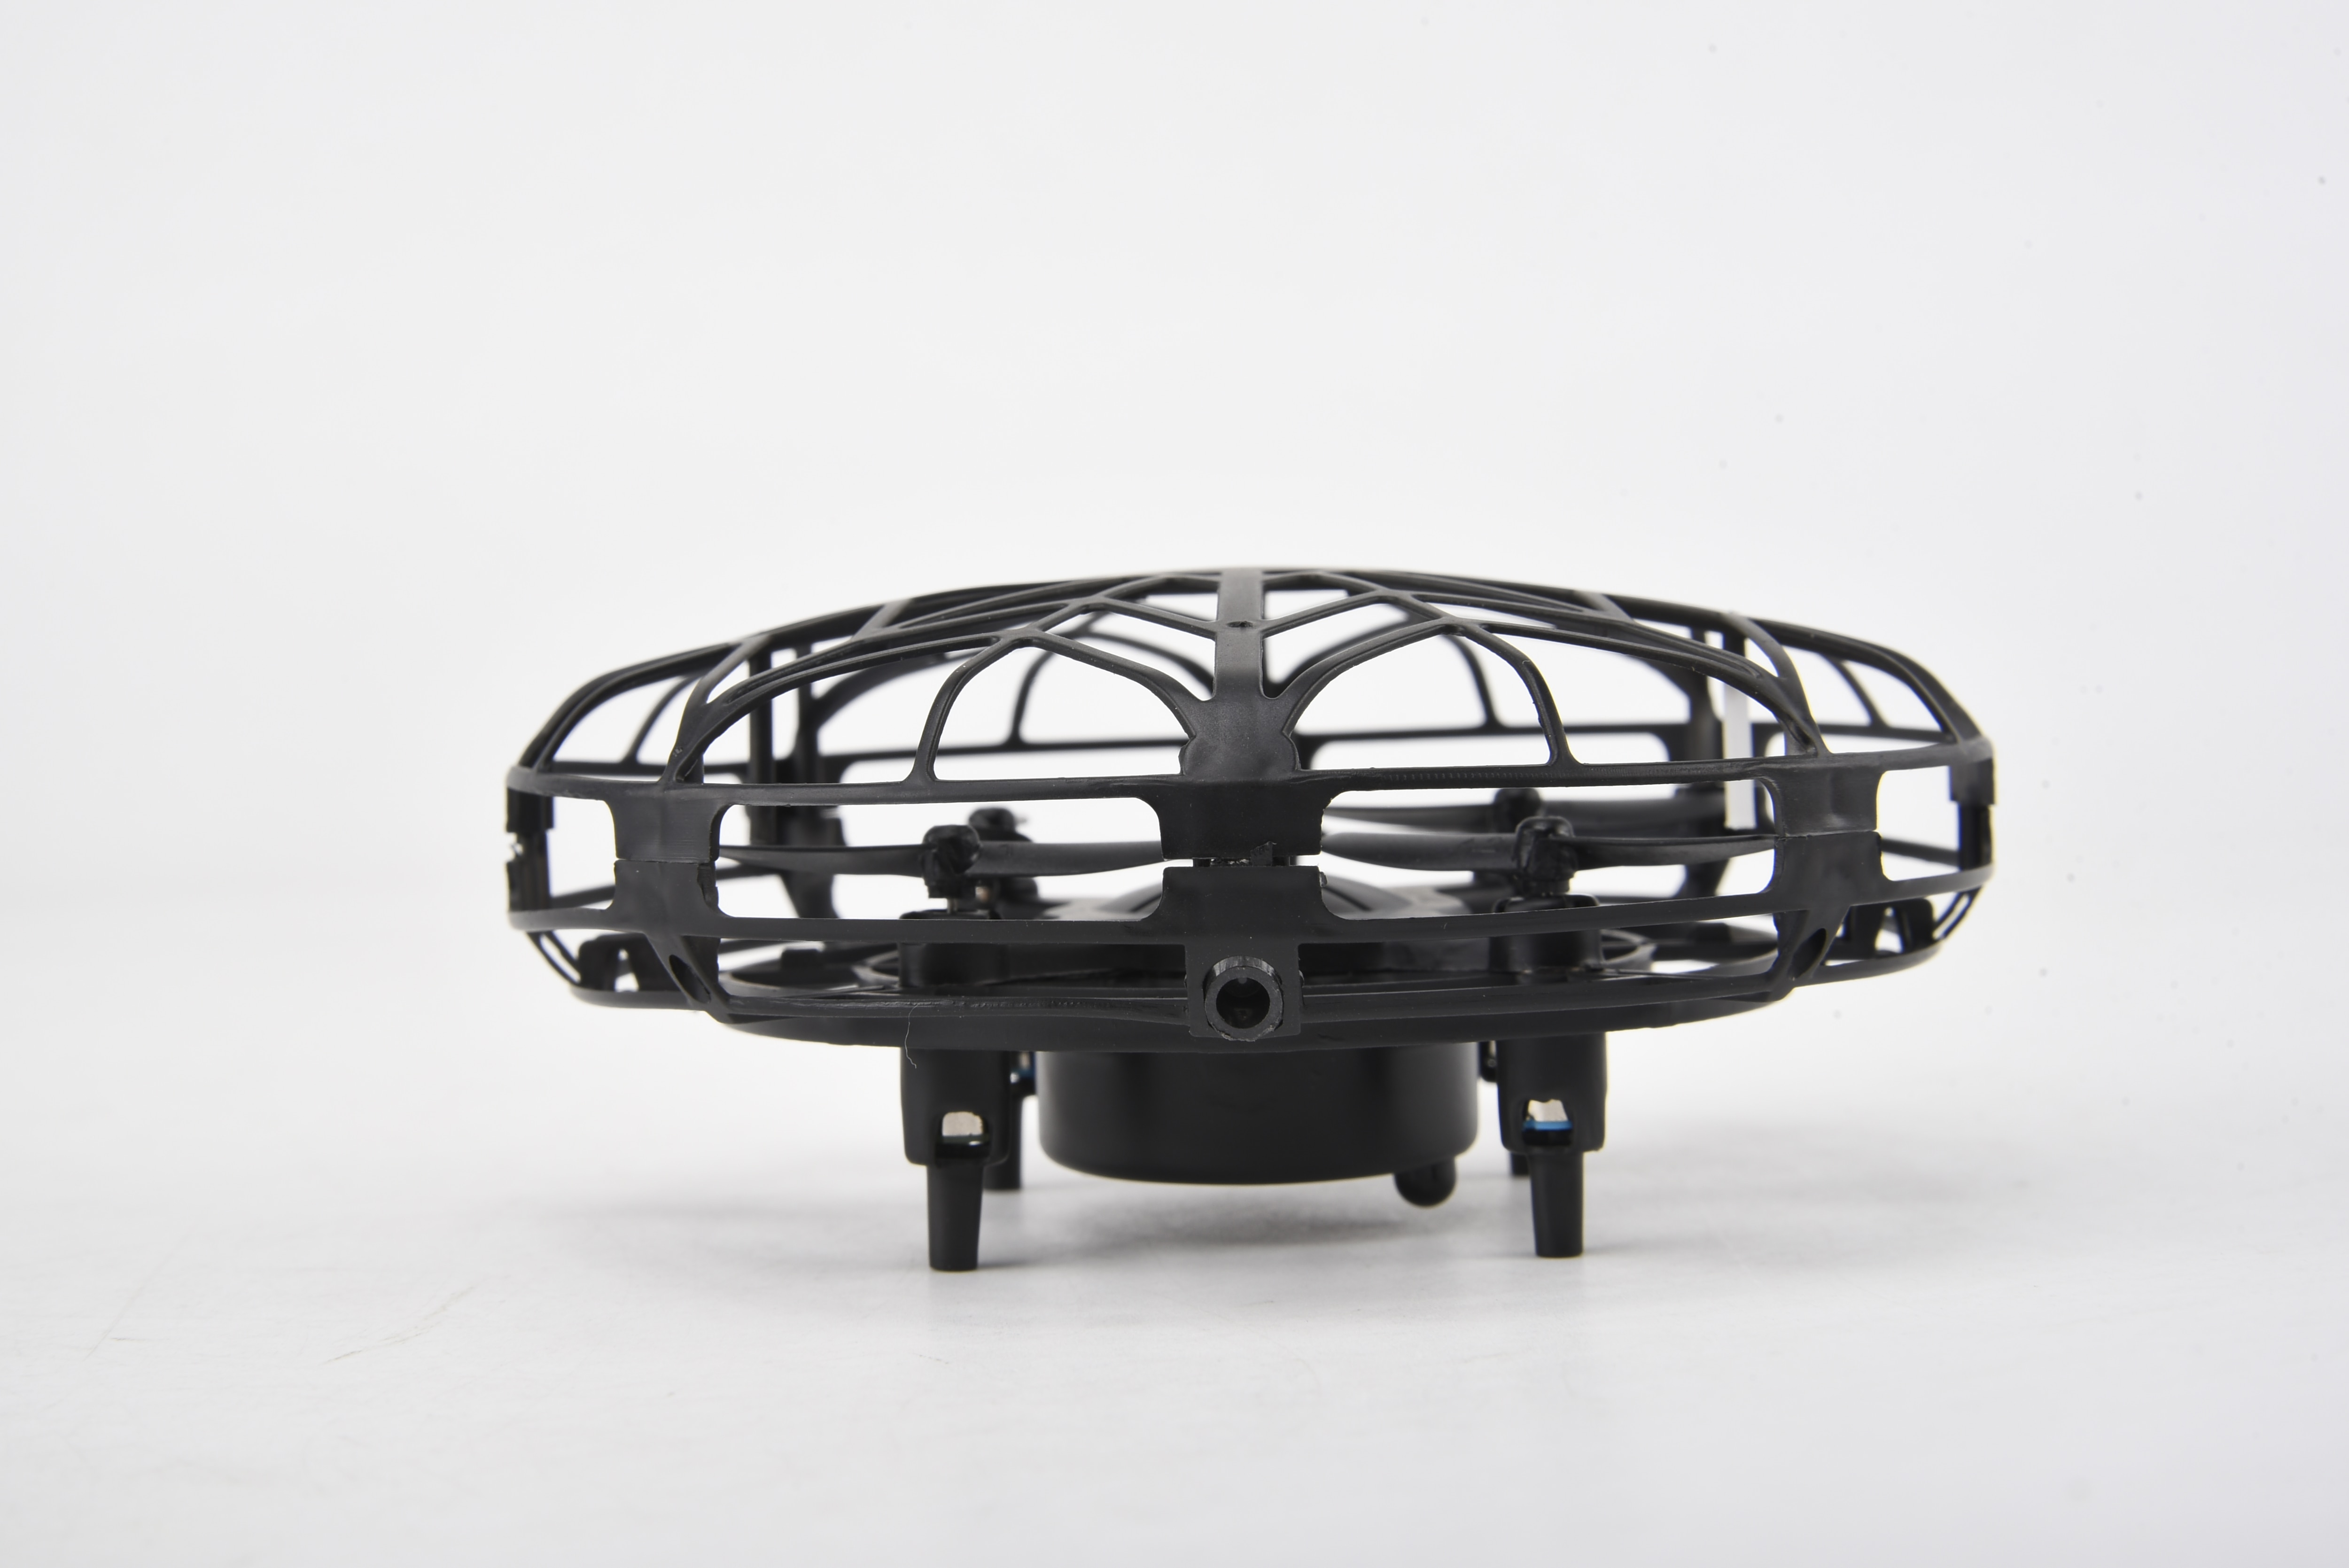 Smart Drone UFO, noir